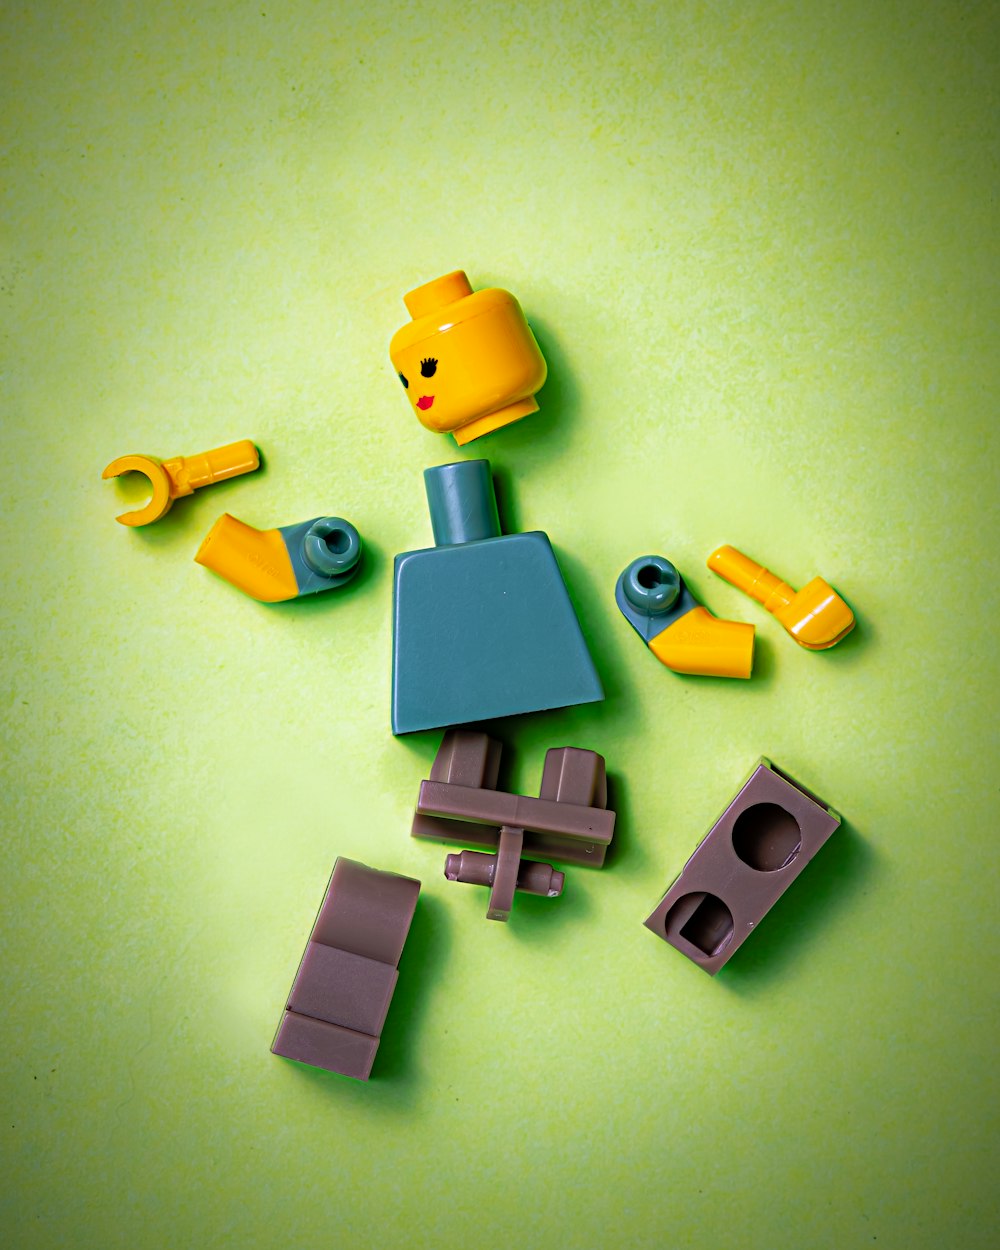 Imágenes de Piezas Lego | Descarga imágenes gratuitas en Unsplash